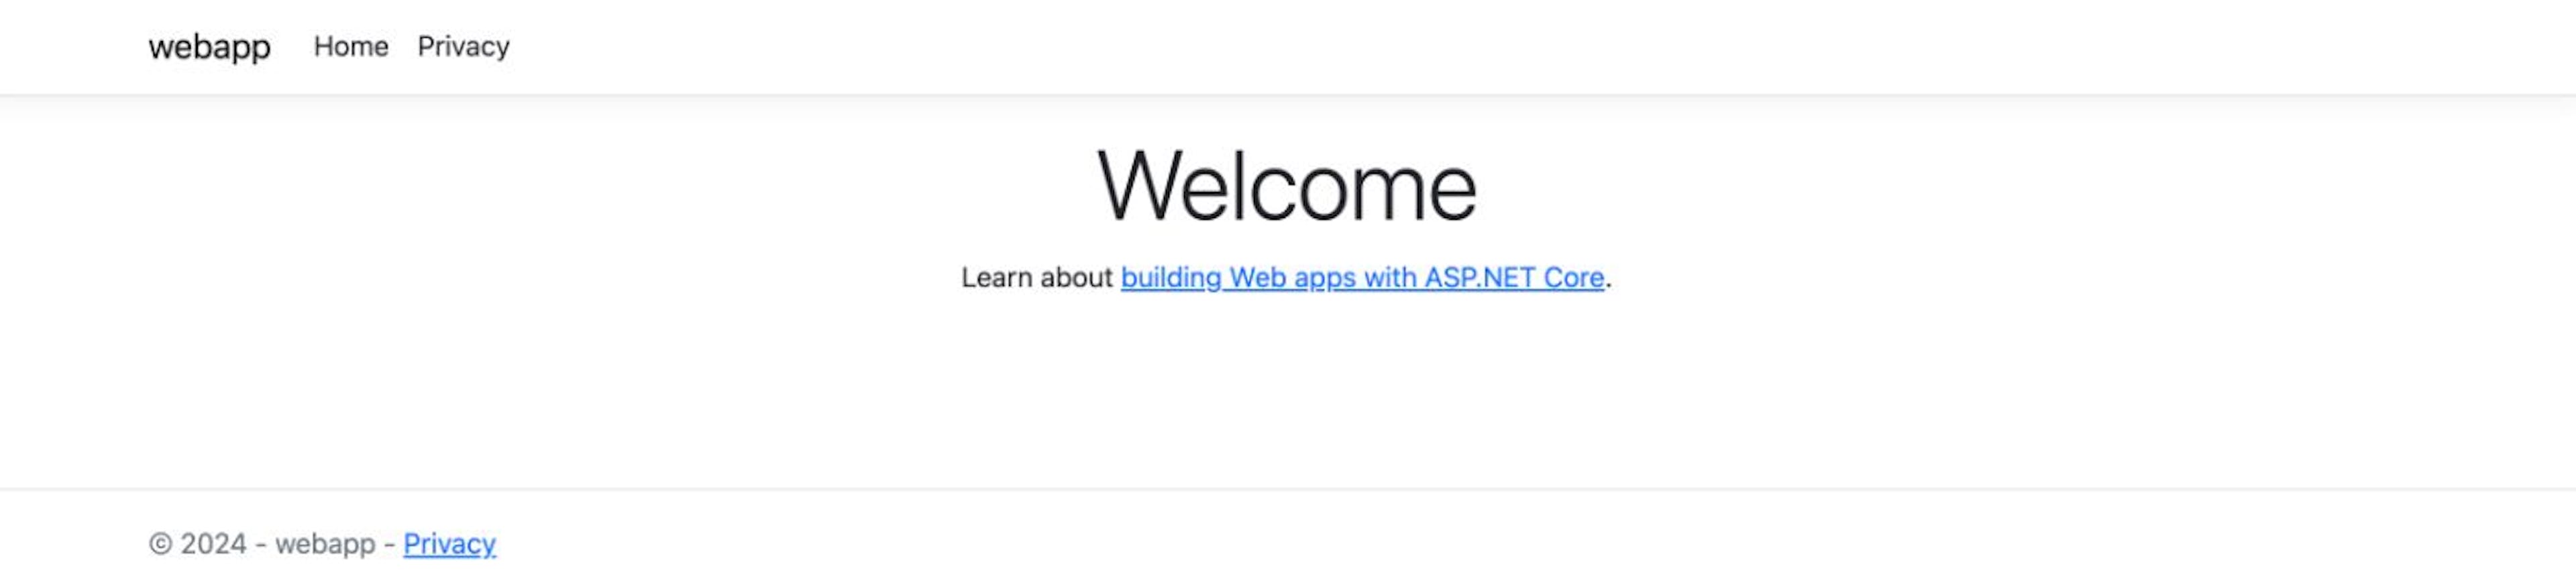 ASP.NET Core Web App: Home page